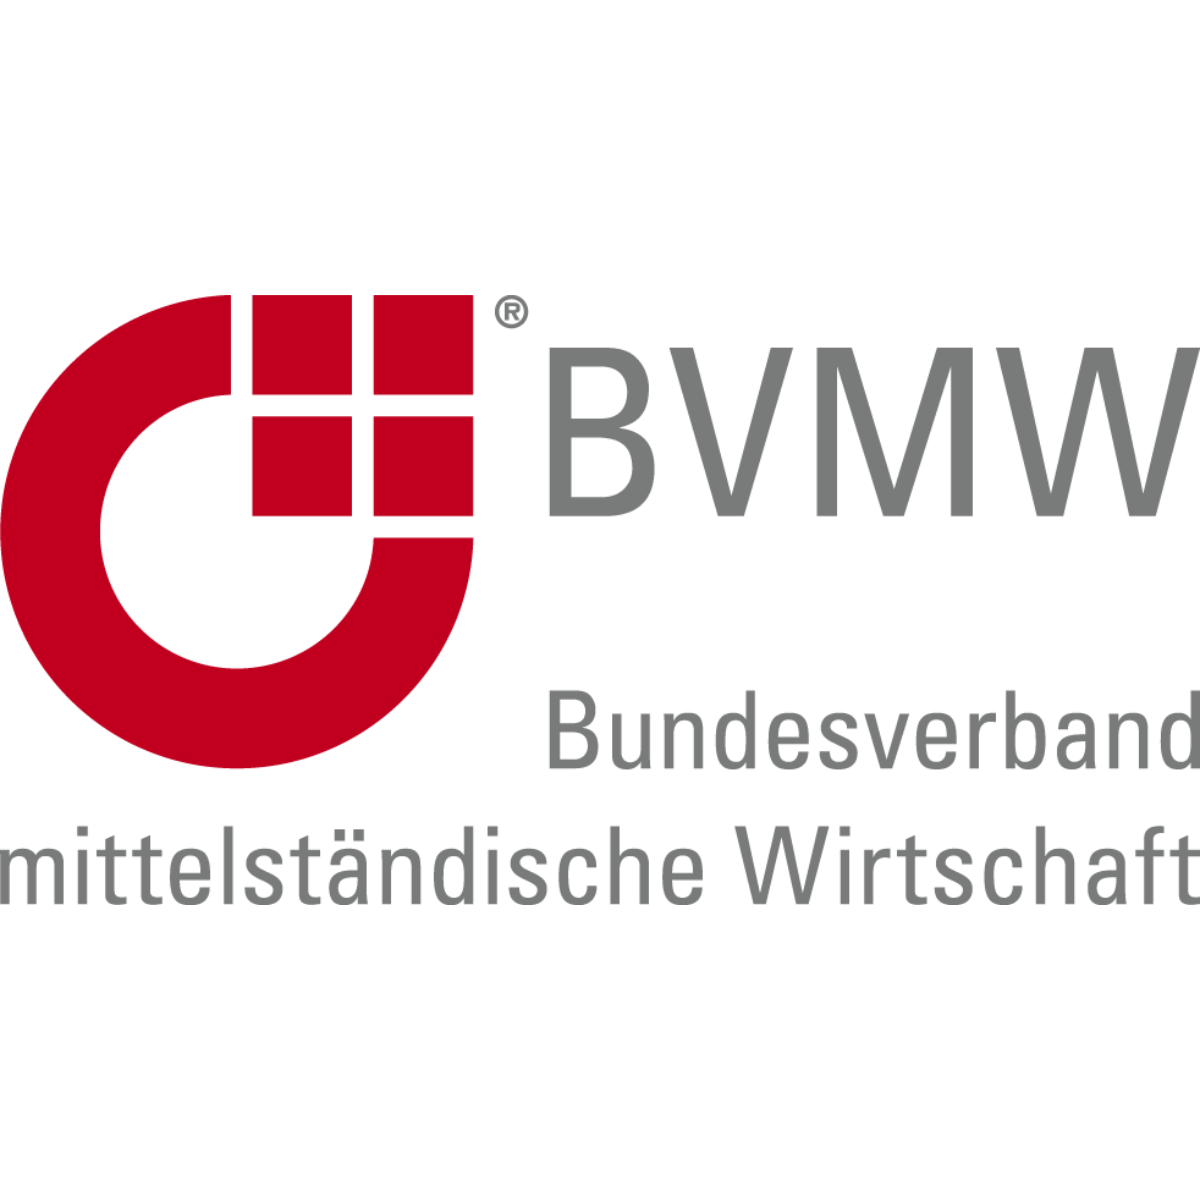 BVMW Bundesverband mittelständische Wirtschaft Logo